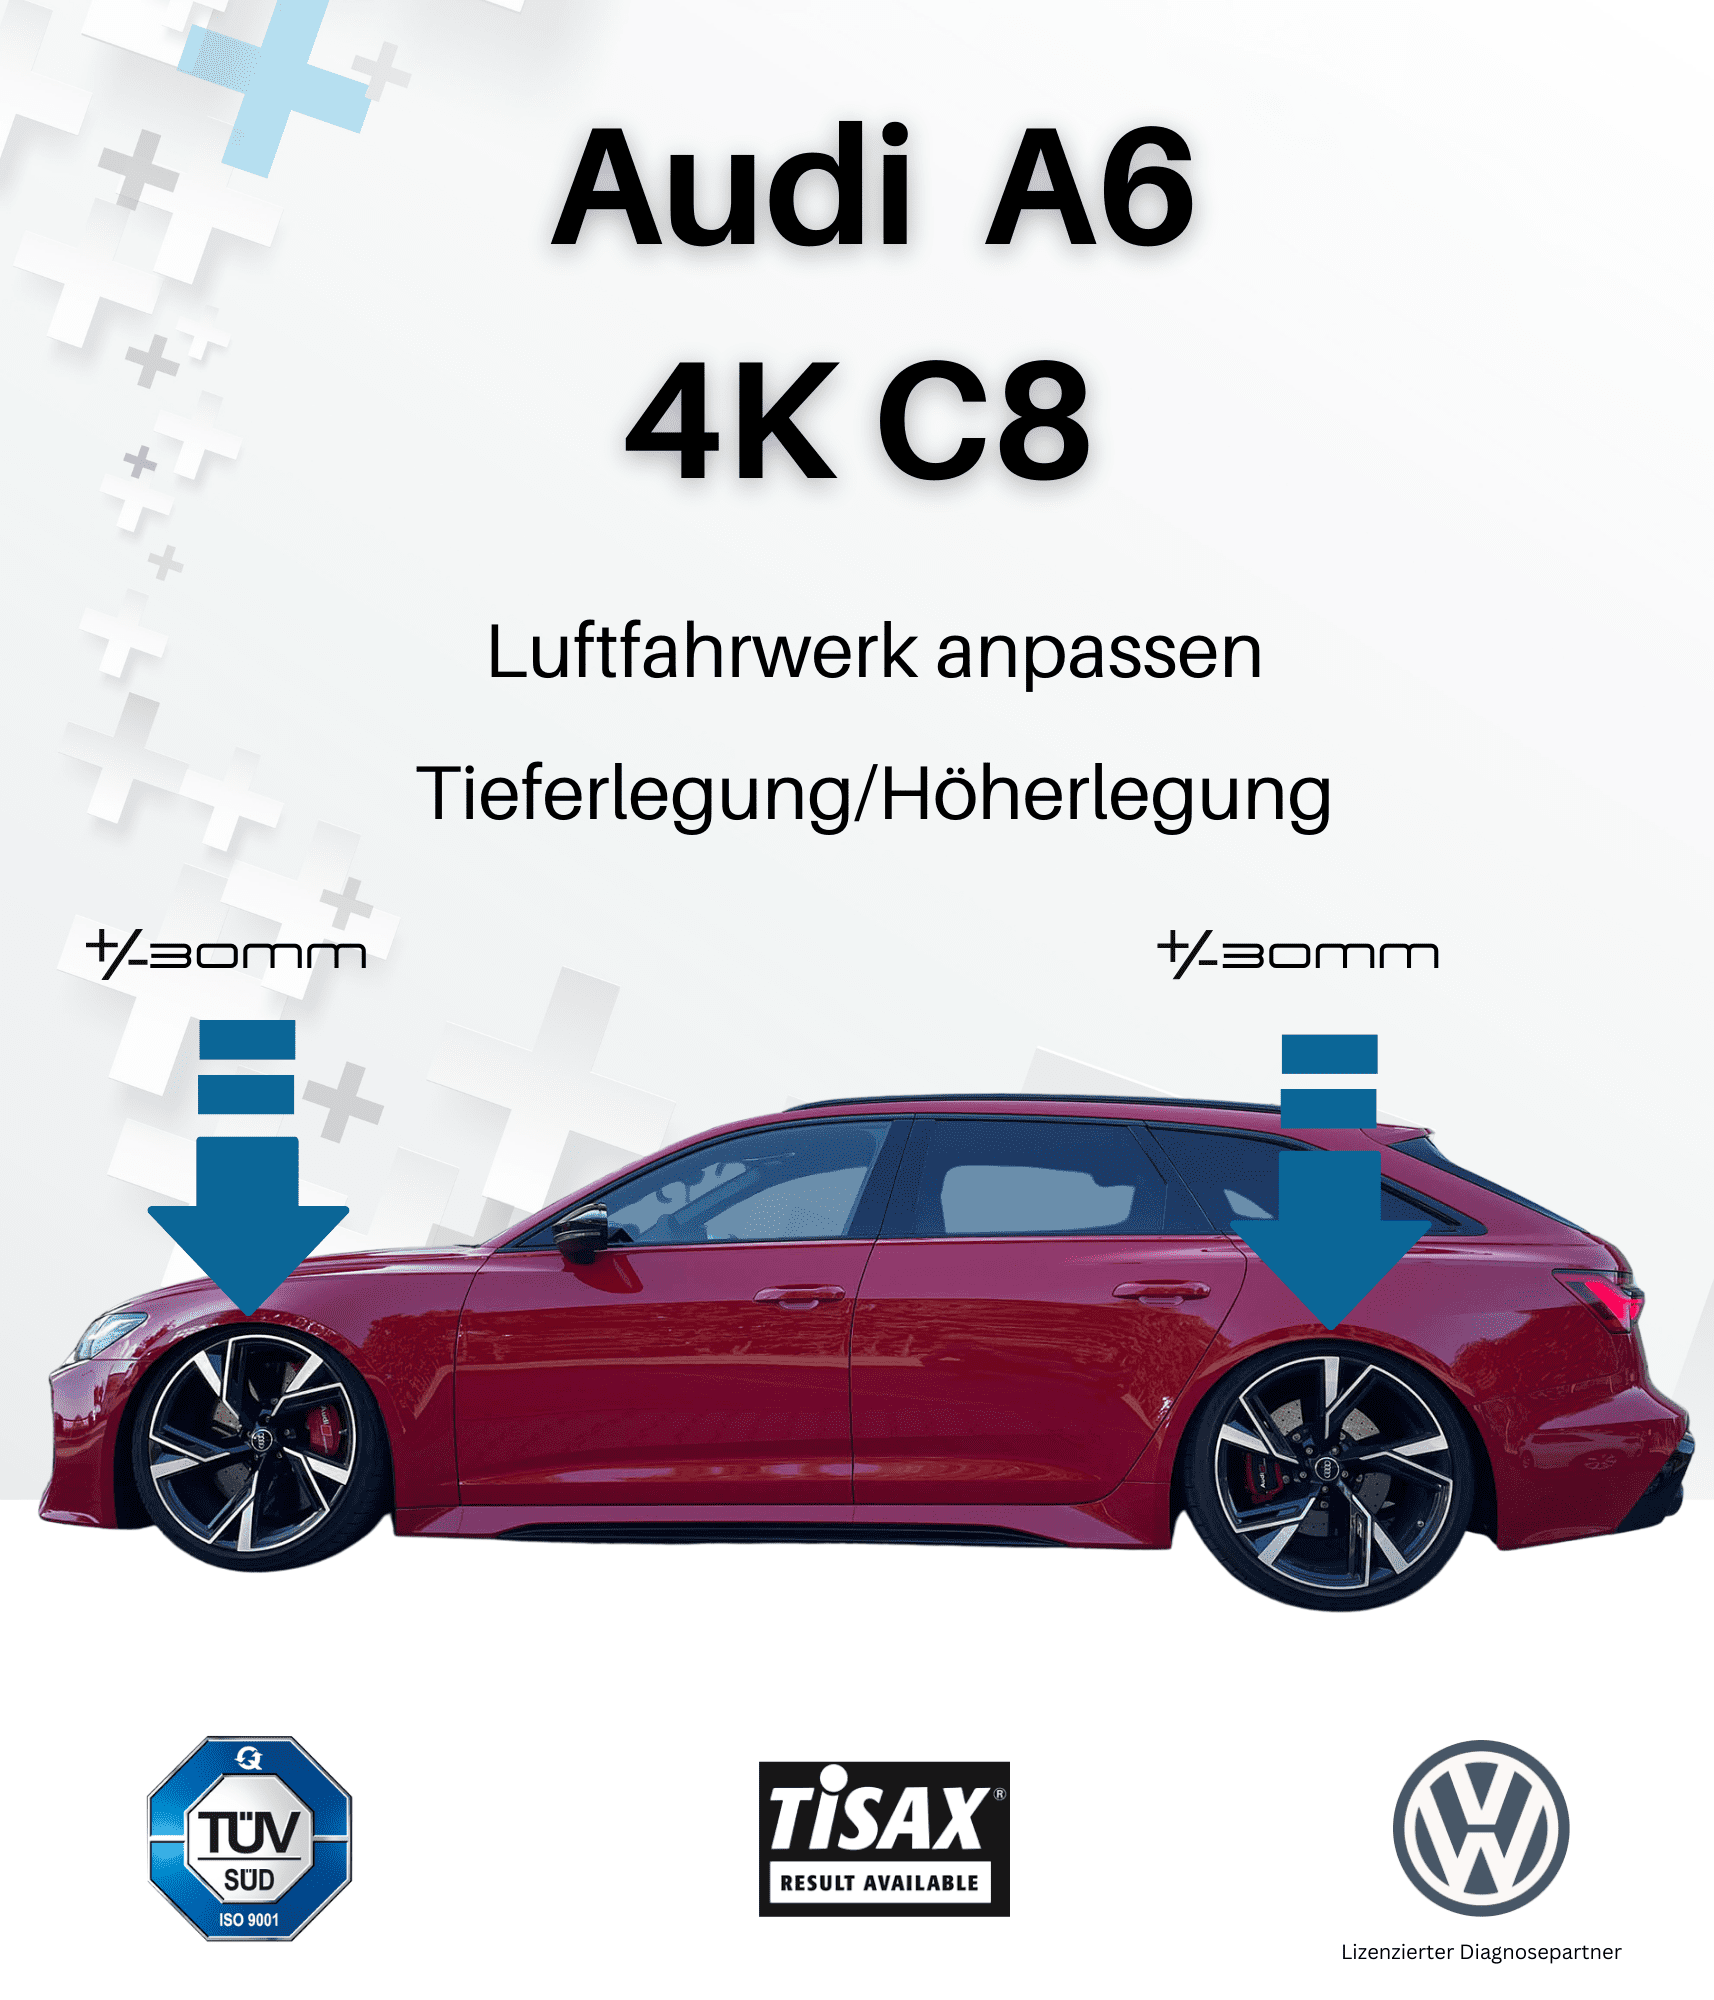 OBDAPP Shop - Audi A6 4K Luftfahrwerk tieferlegung automatisiert